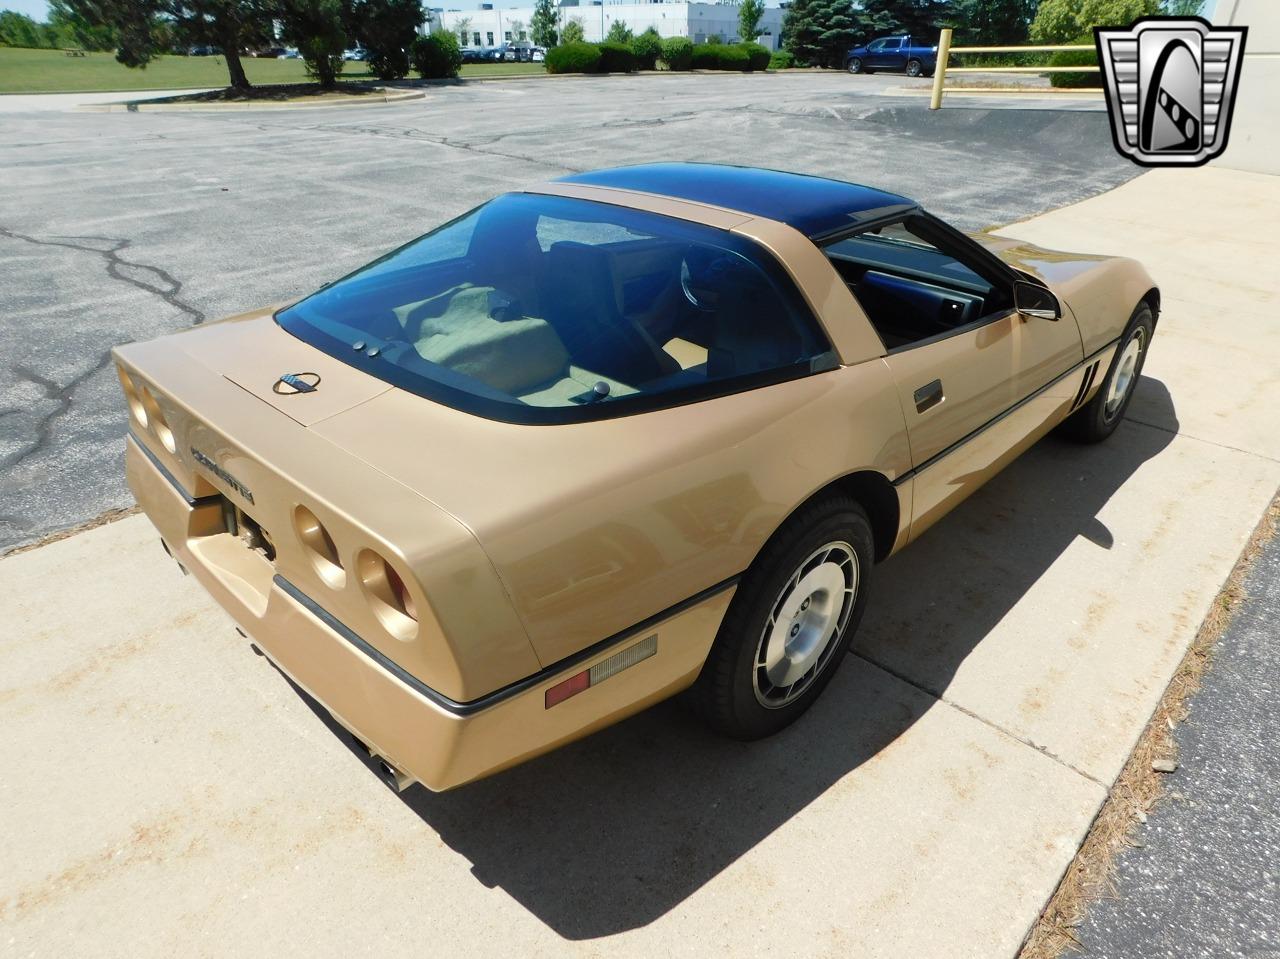 1984 Chevrolet Corvette